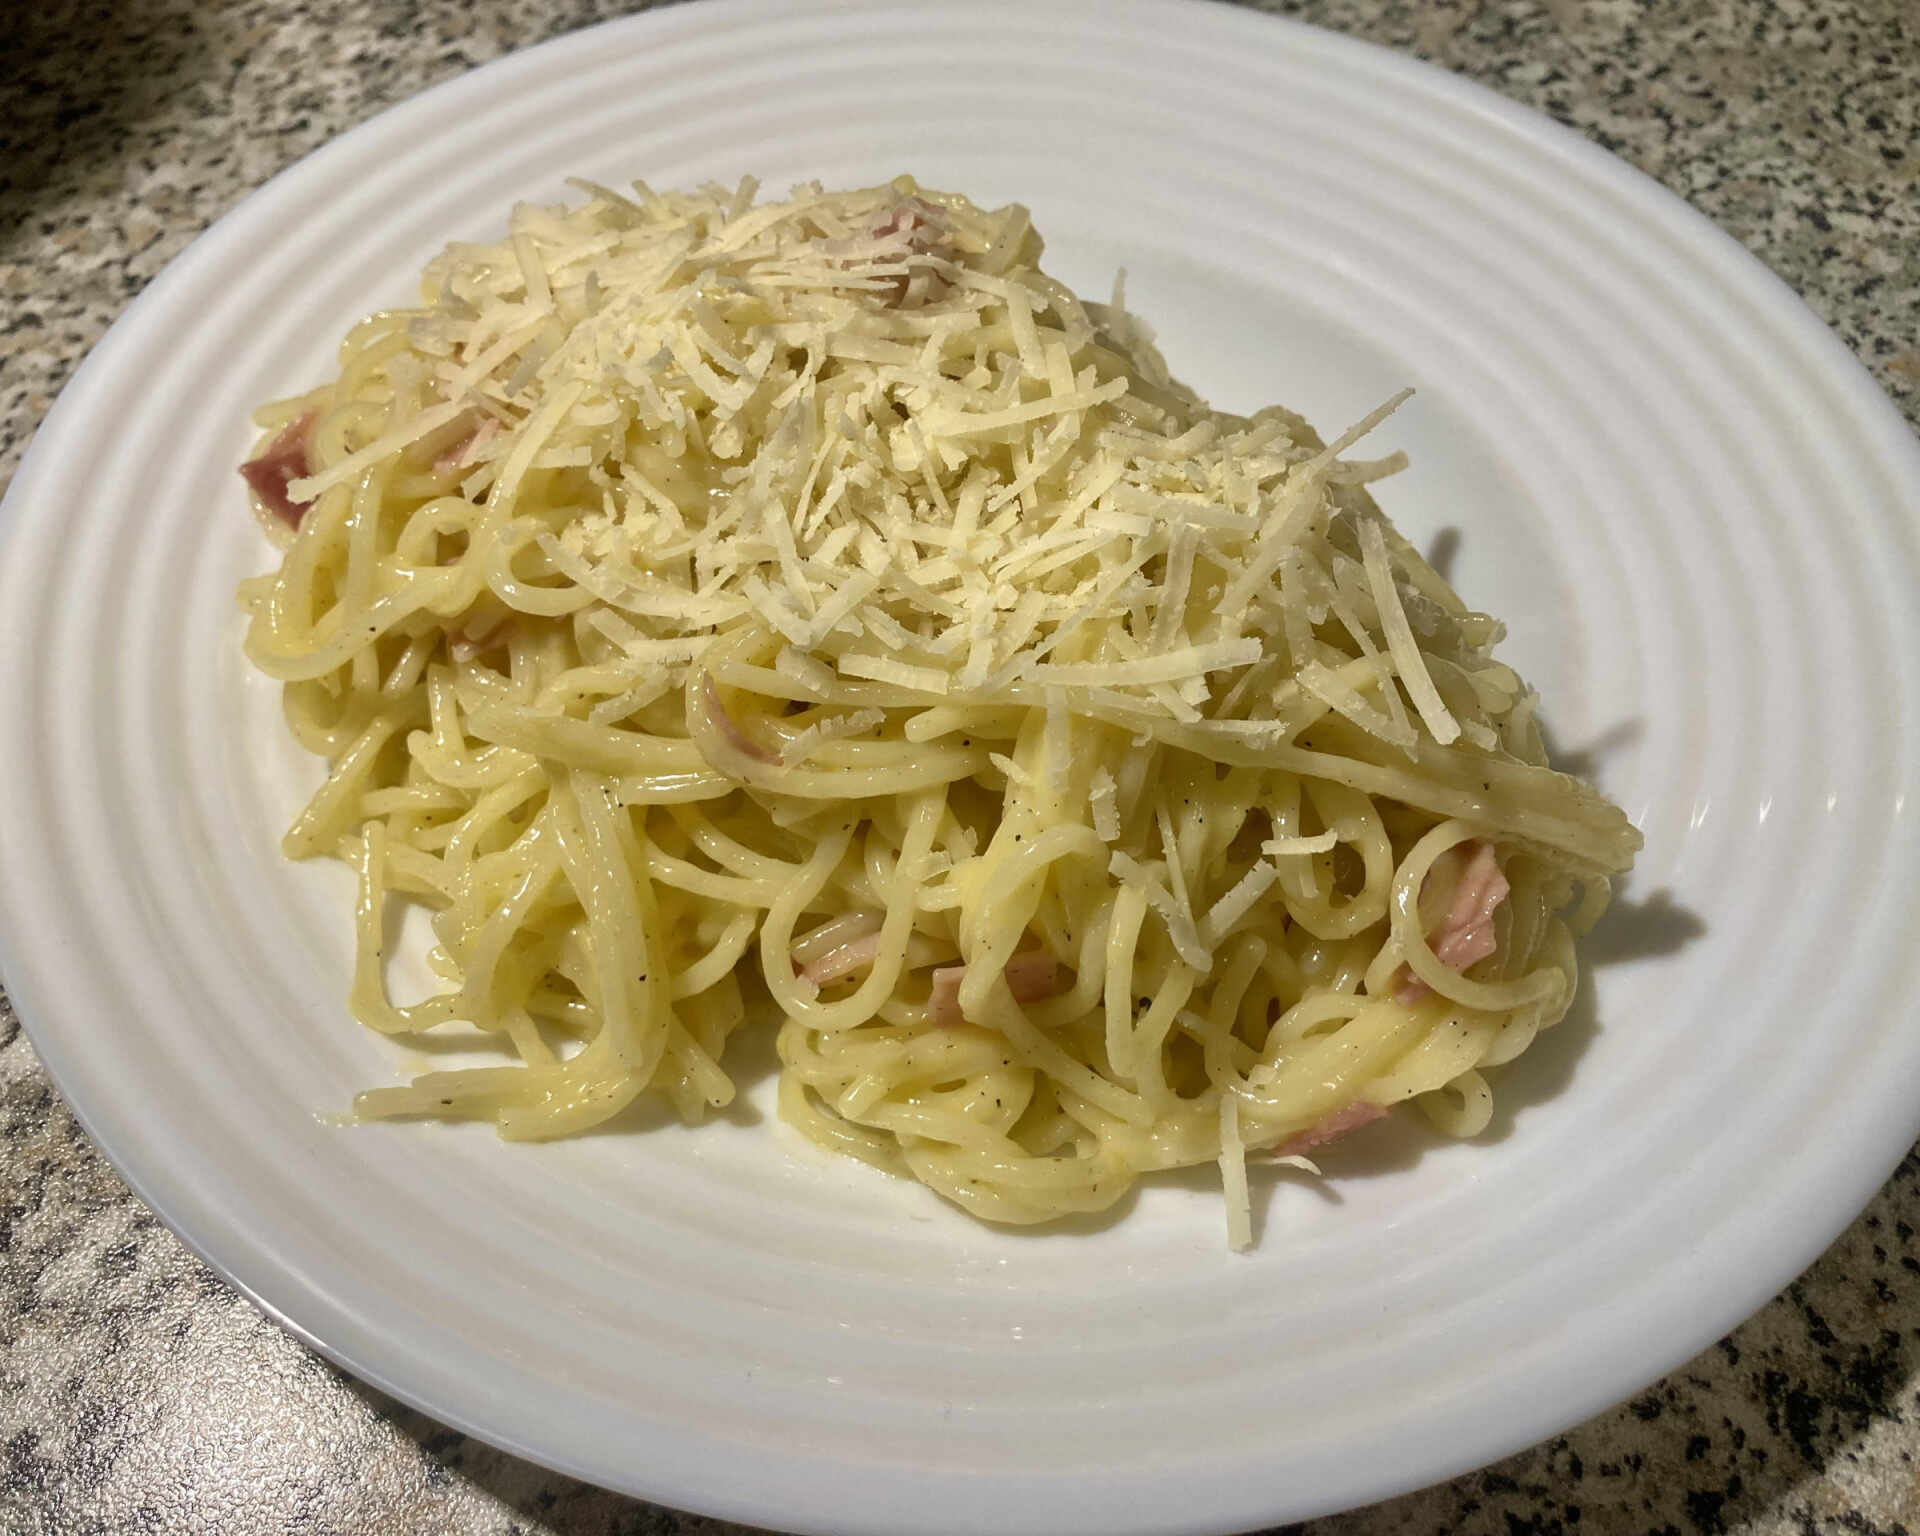 Hotové špagety carbonara posypané syrom Pecorino